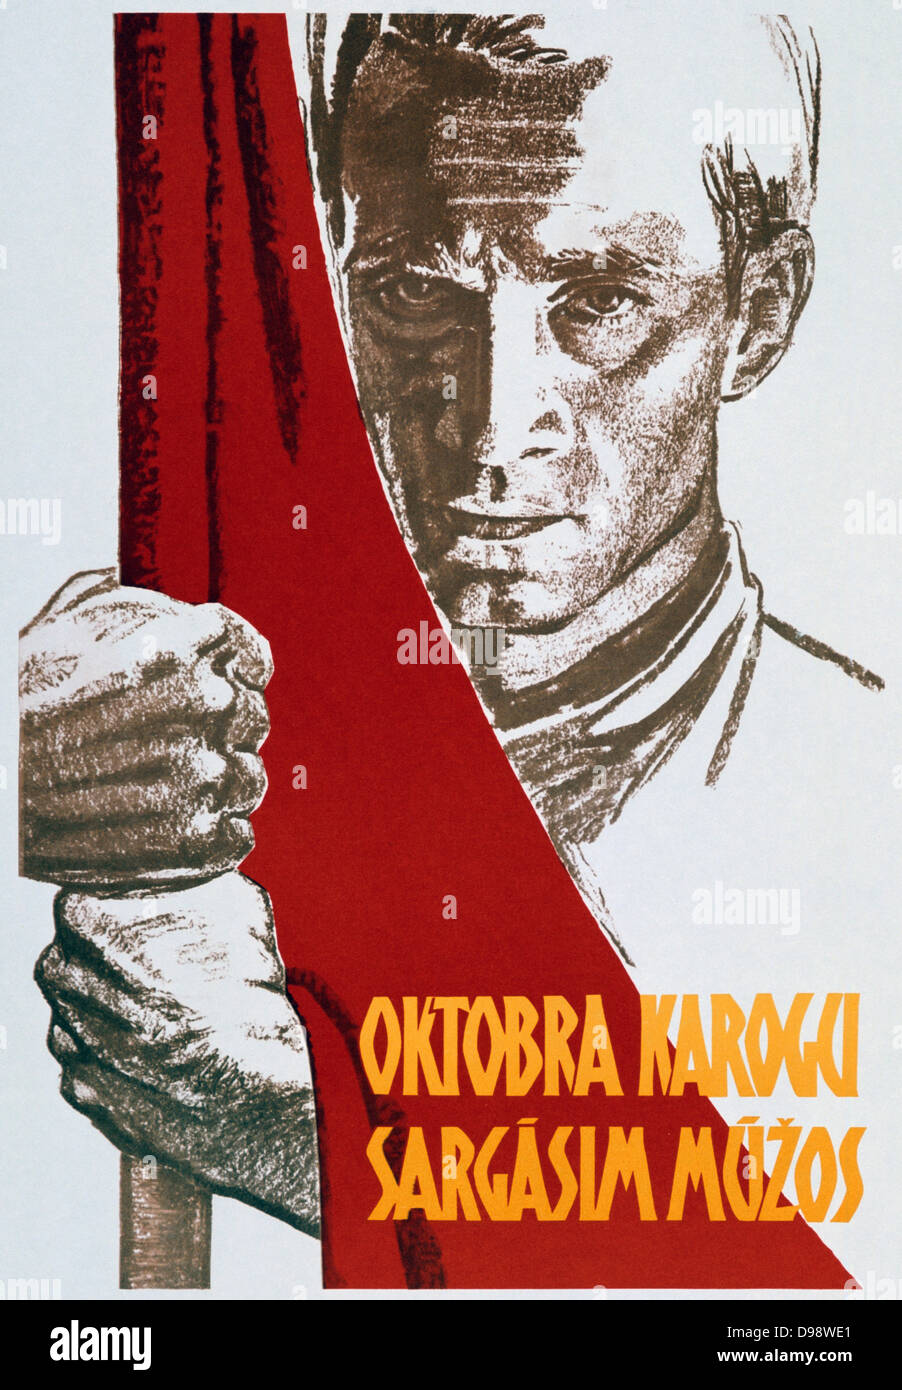 Llevamos la bandera de octubre a lo largo de los siglos". Cartel propagandístico soviético, 1963. Revolutiion 1919 la Rusia Soviética URSS comunista el comunismo Foto de stock